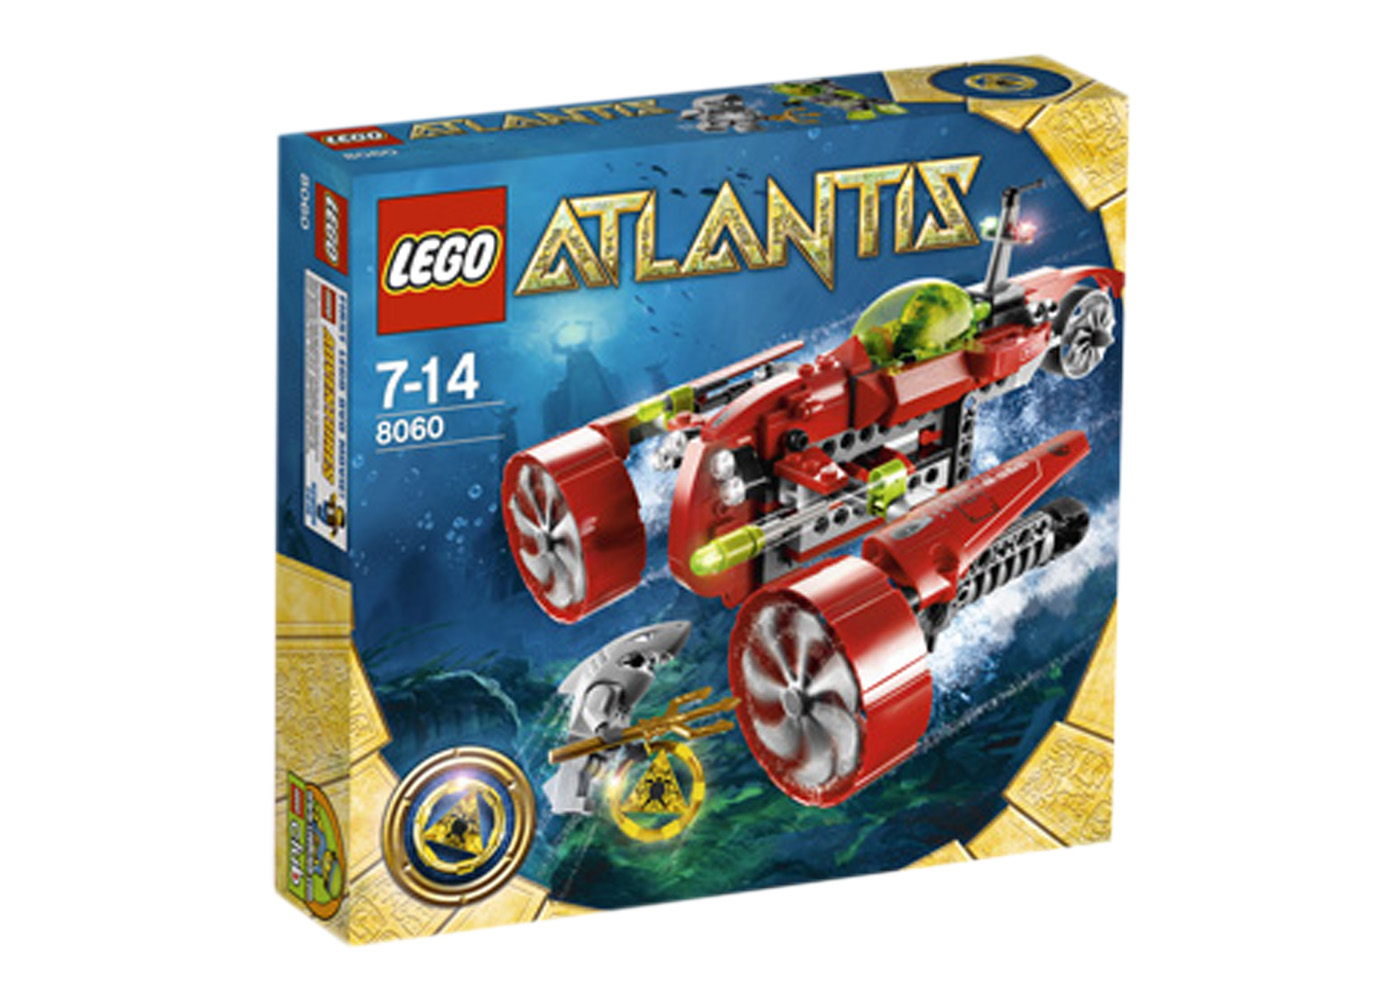 LEGO Atlantis Typhoon Turbo Sub Set 8060 - US